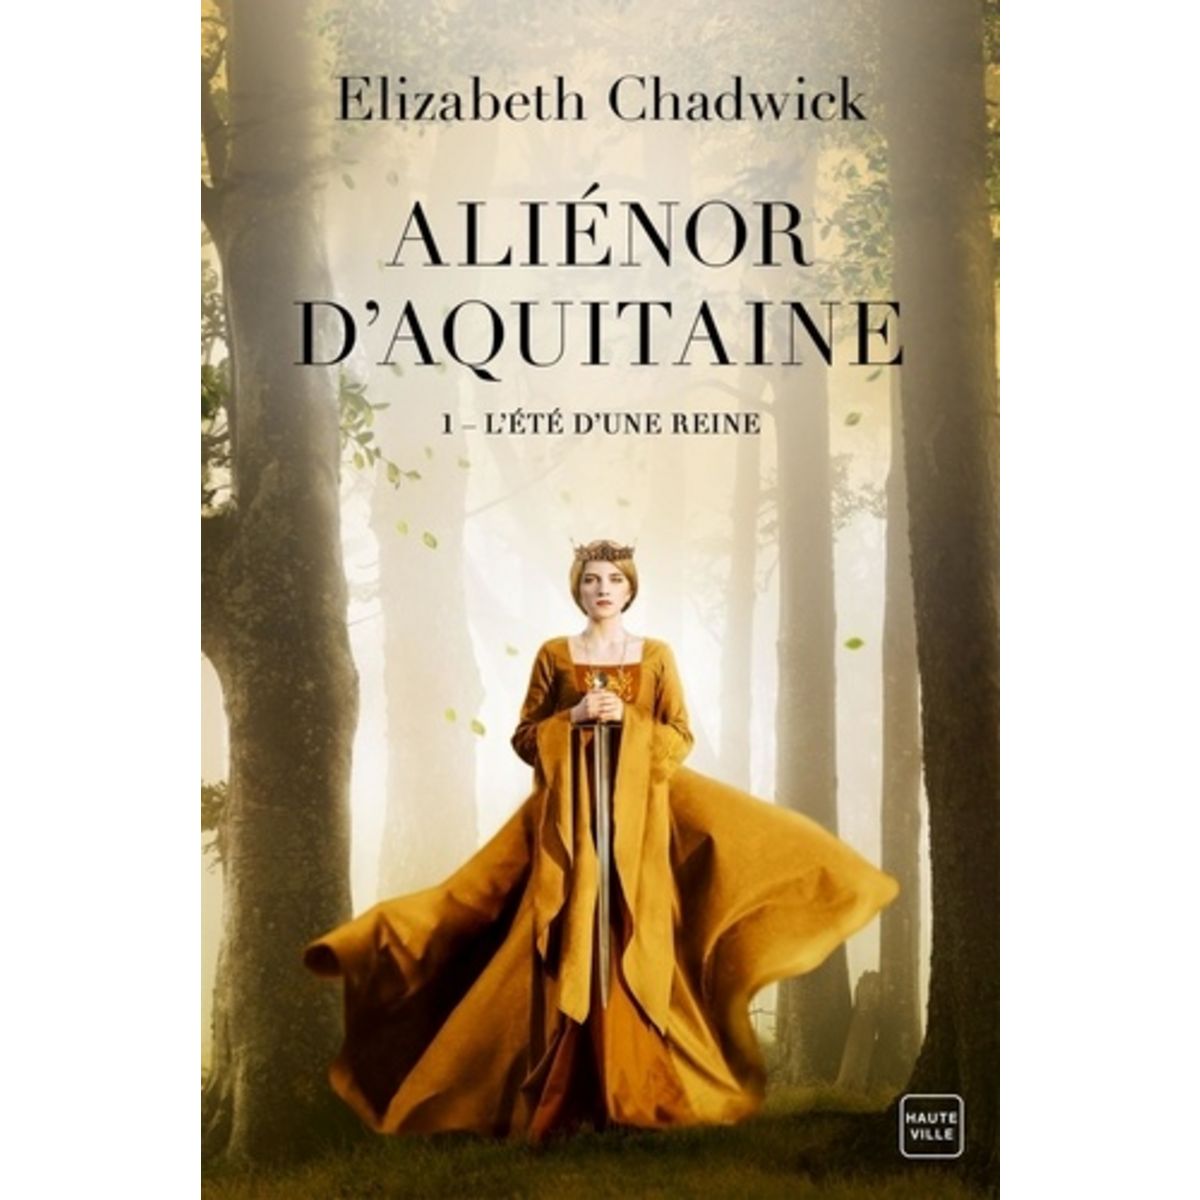  ALIENOR D'AQUITAINE TOME 1 : L'ETE D'UNE REINE, Chadwick Elizabeth